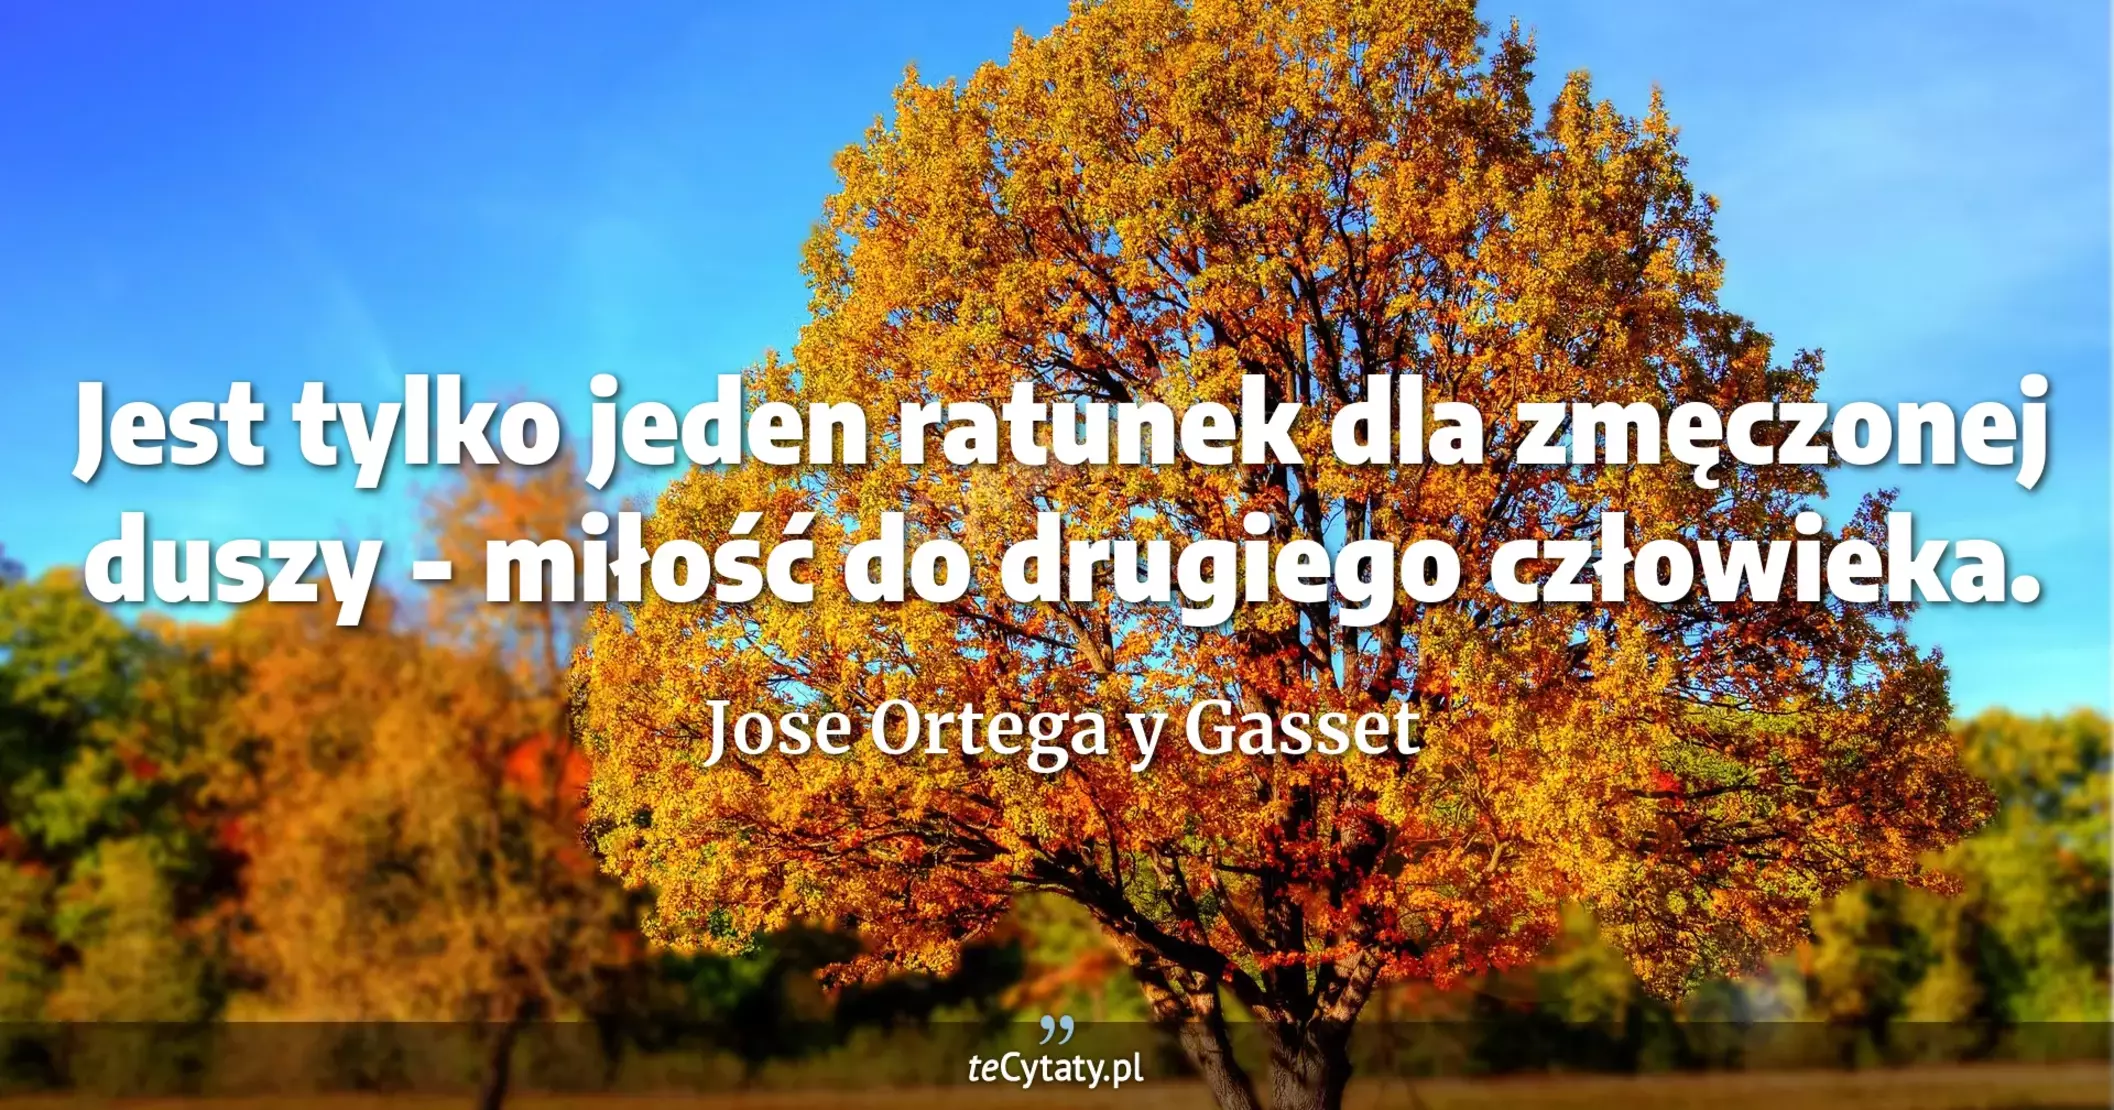 Jest tylko jeden ratunek dla zmęczonej duszy - miłość do drugiego człowieka. - Jose Ortega y Gasset